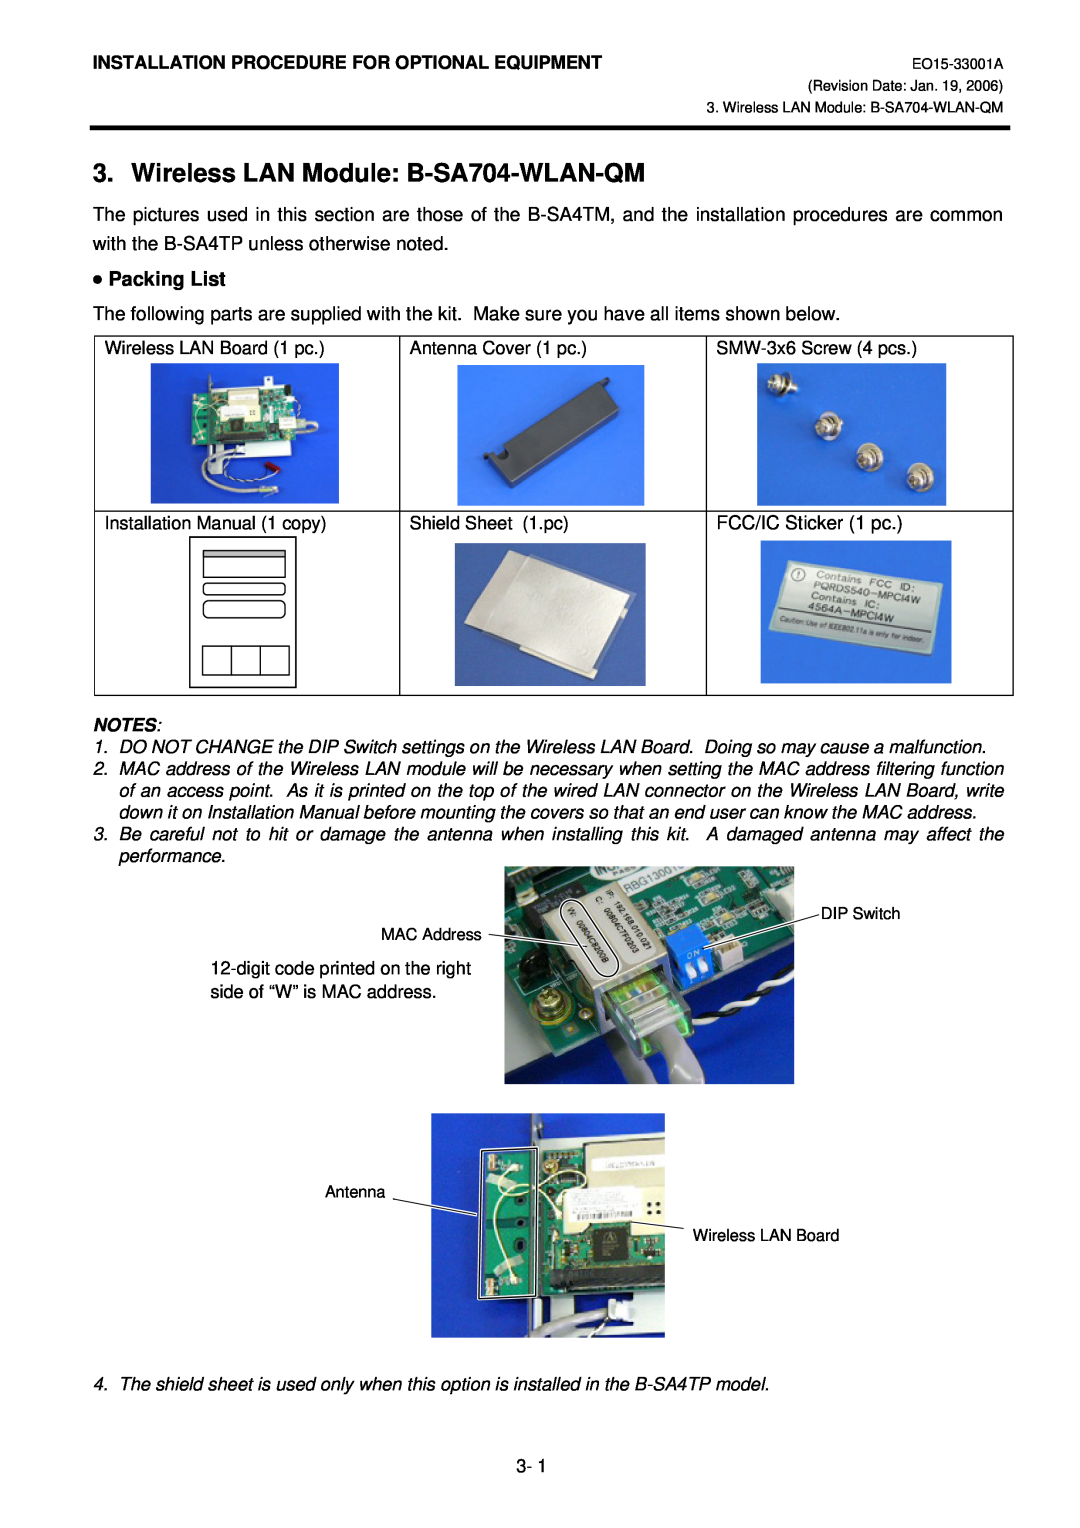 Toshiba B-SA4T Wireless LAN Module B-SA704-WLAN-QM, Packing List, Wireless LAN Board 1 pc, Antenna Cover 1 pc 